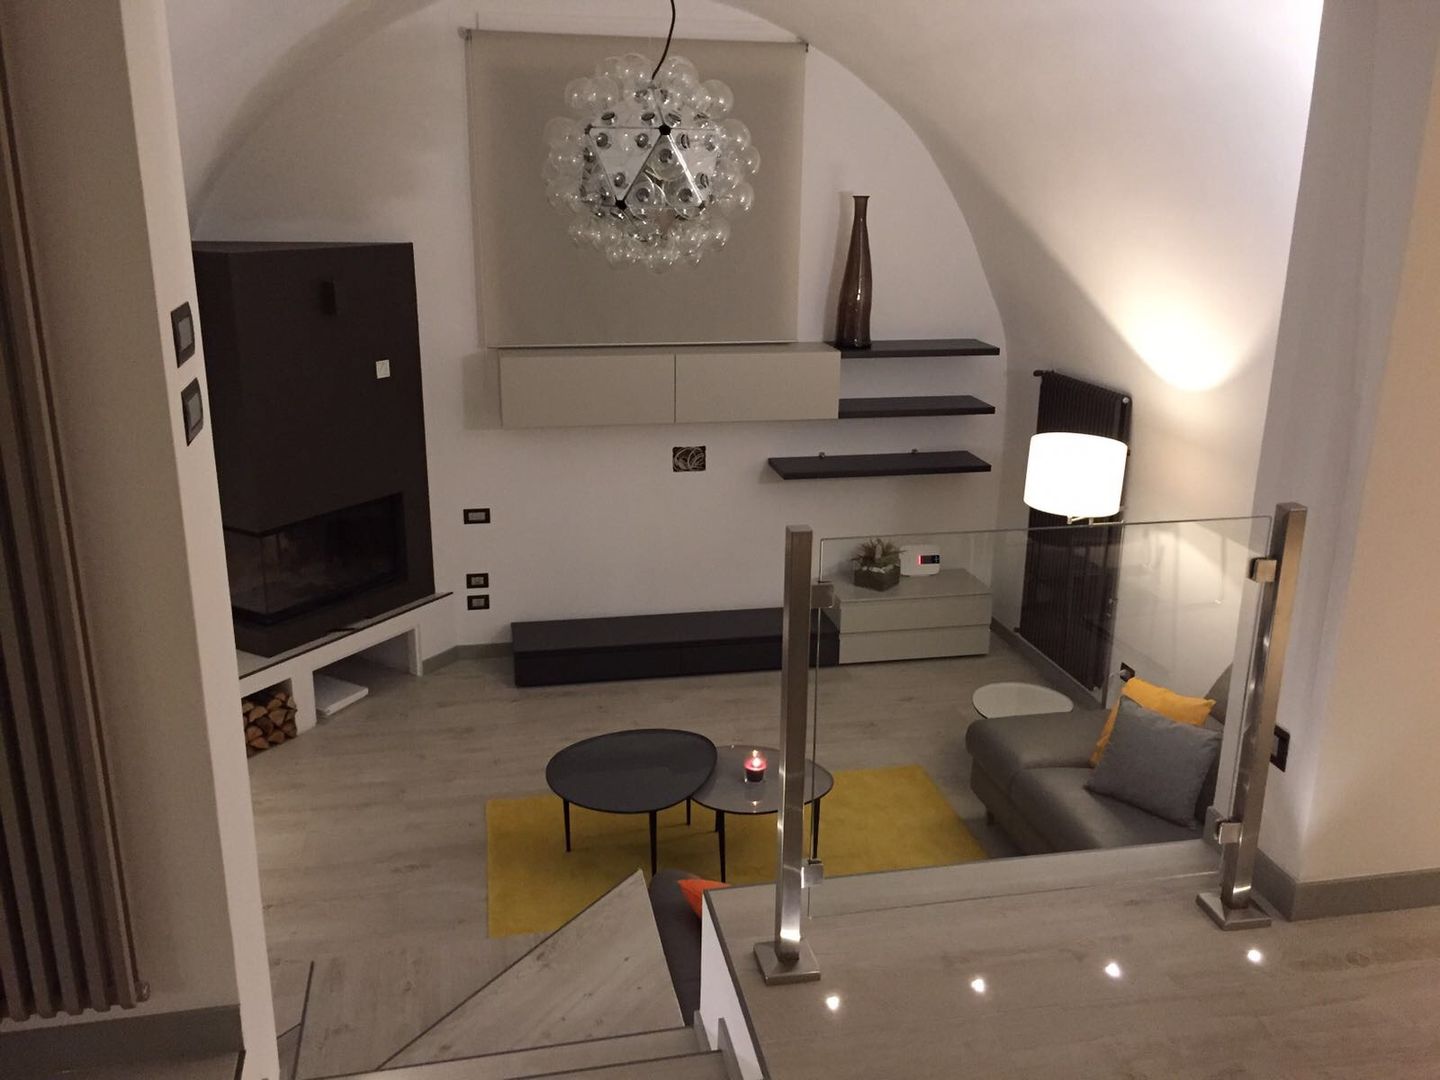 Appartamento in Turi (Bari) - Moderno su due livelli, SILVIA ZACCARO ARCHITETTO SILVIA ZACCARO ARCHITETTO Salas modernas